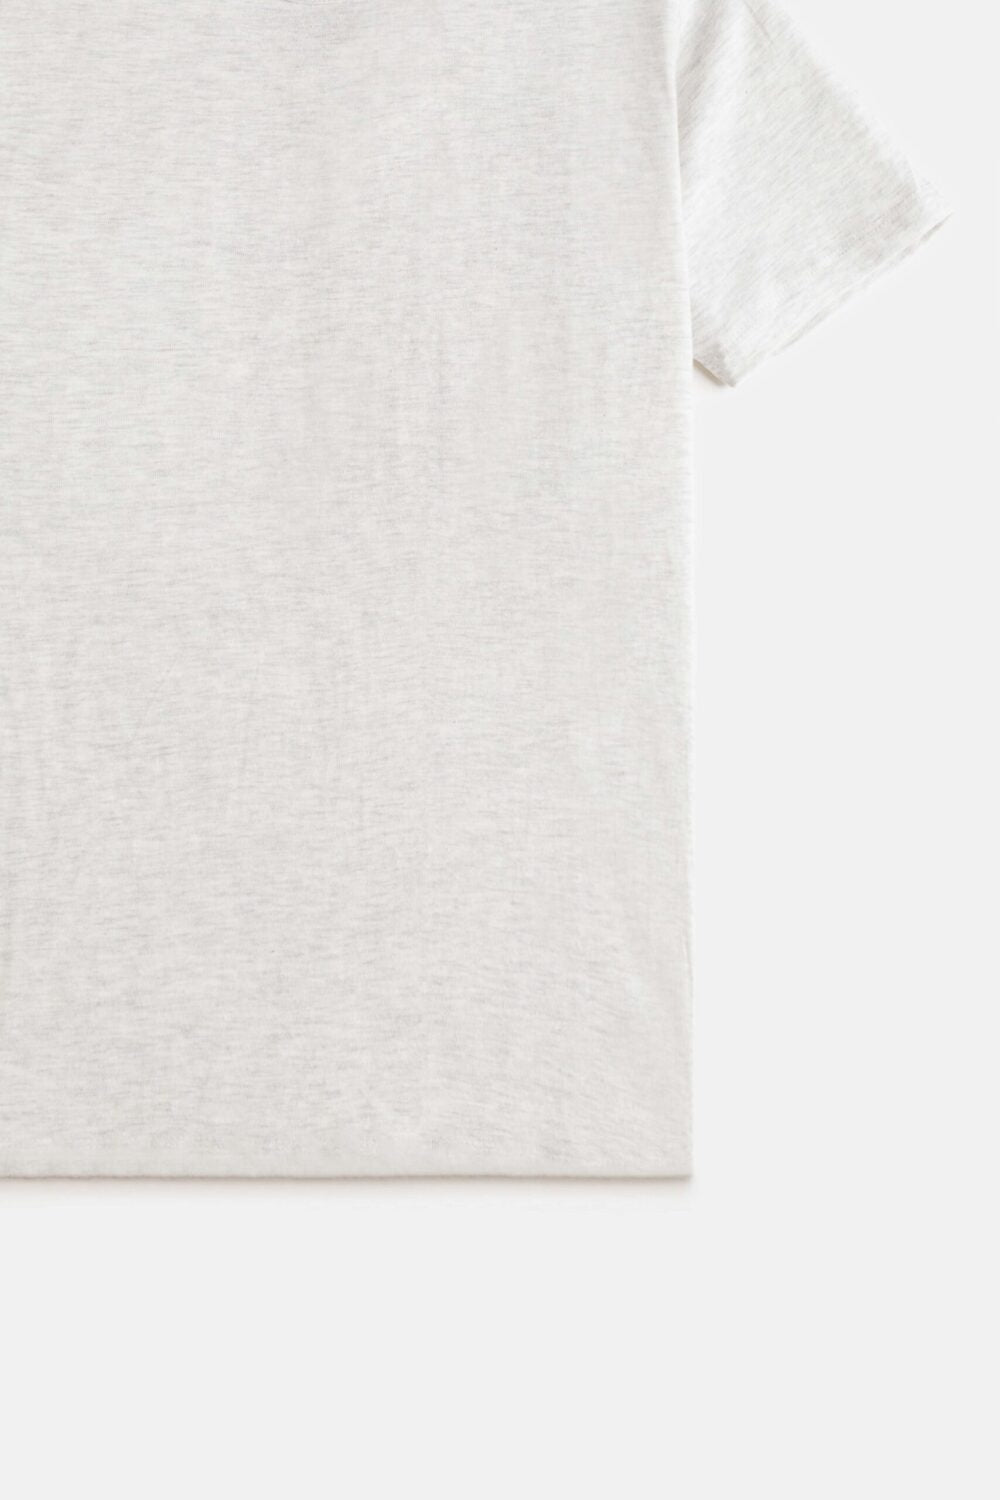 ZR Basic Cotton T Shirt – Bone White